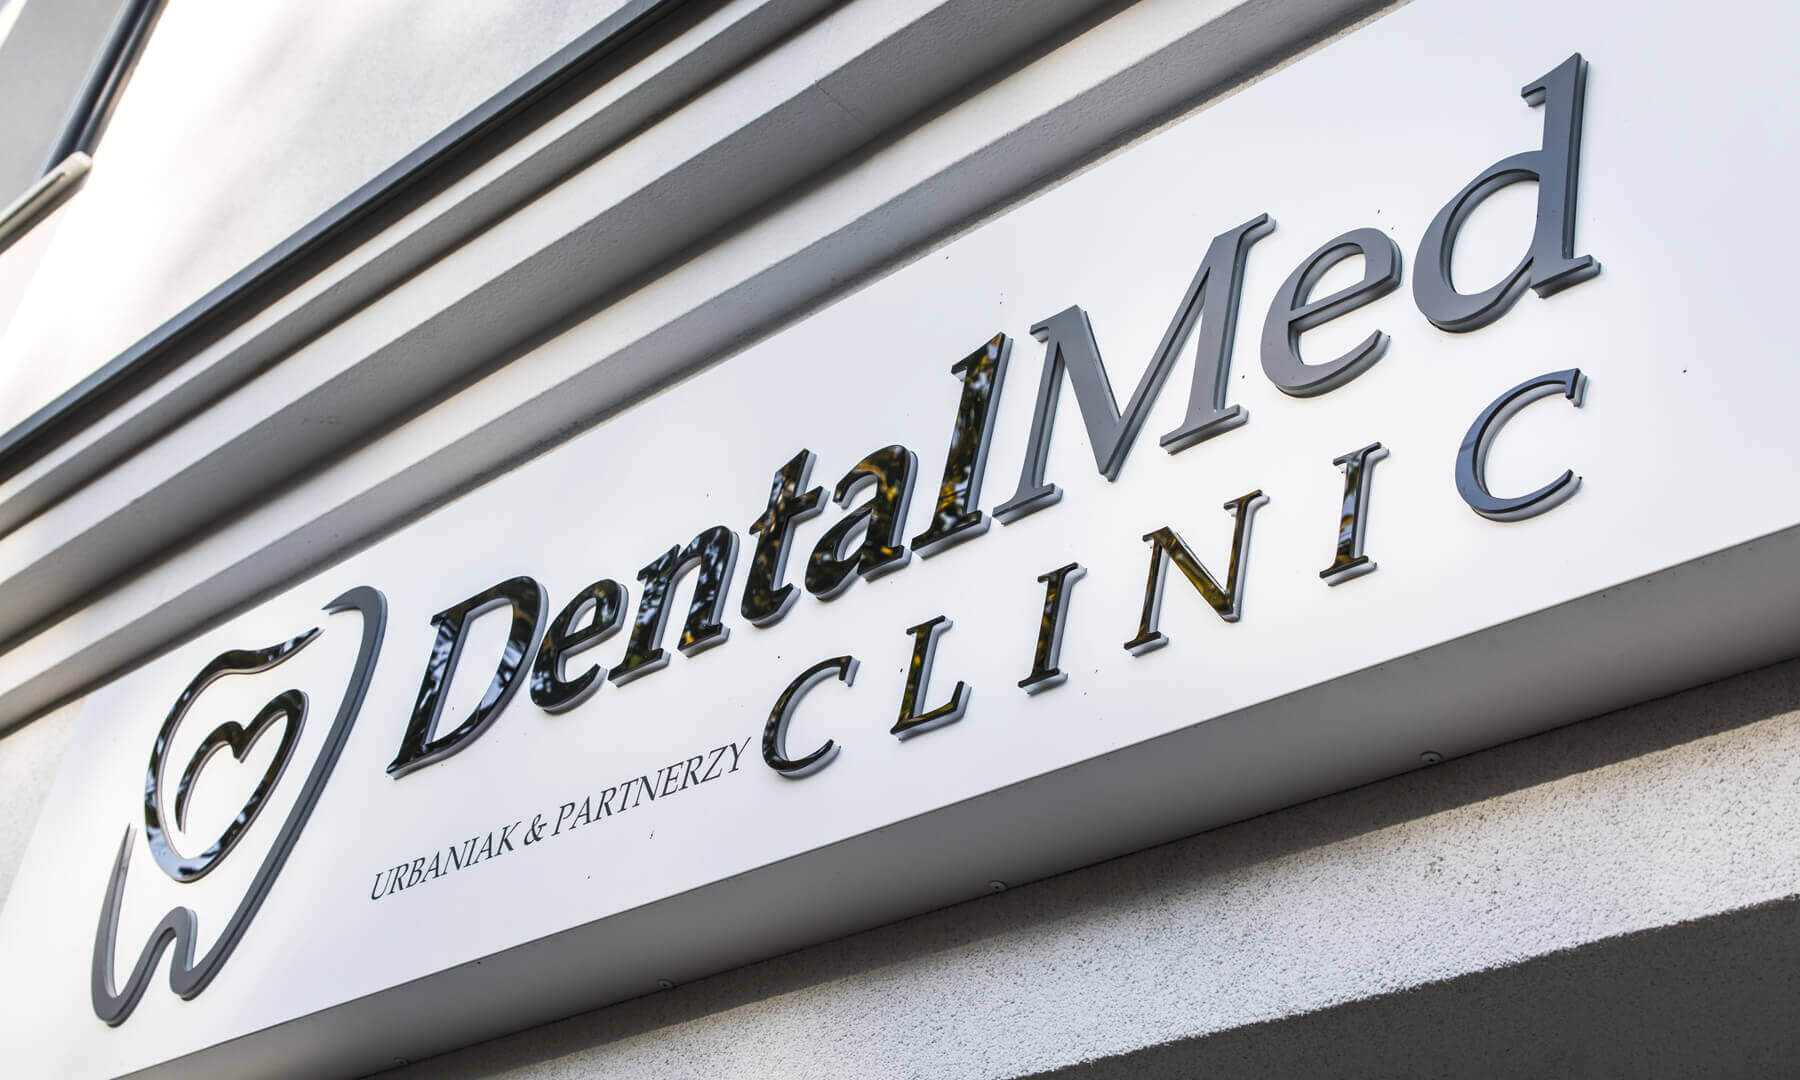 DentalMed - DentalMed - Lettres spatiales sur le coffret publicitaire au-dessus de l'entrée